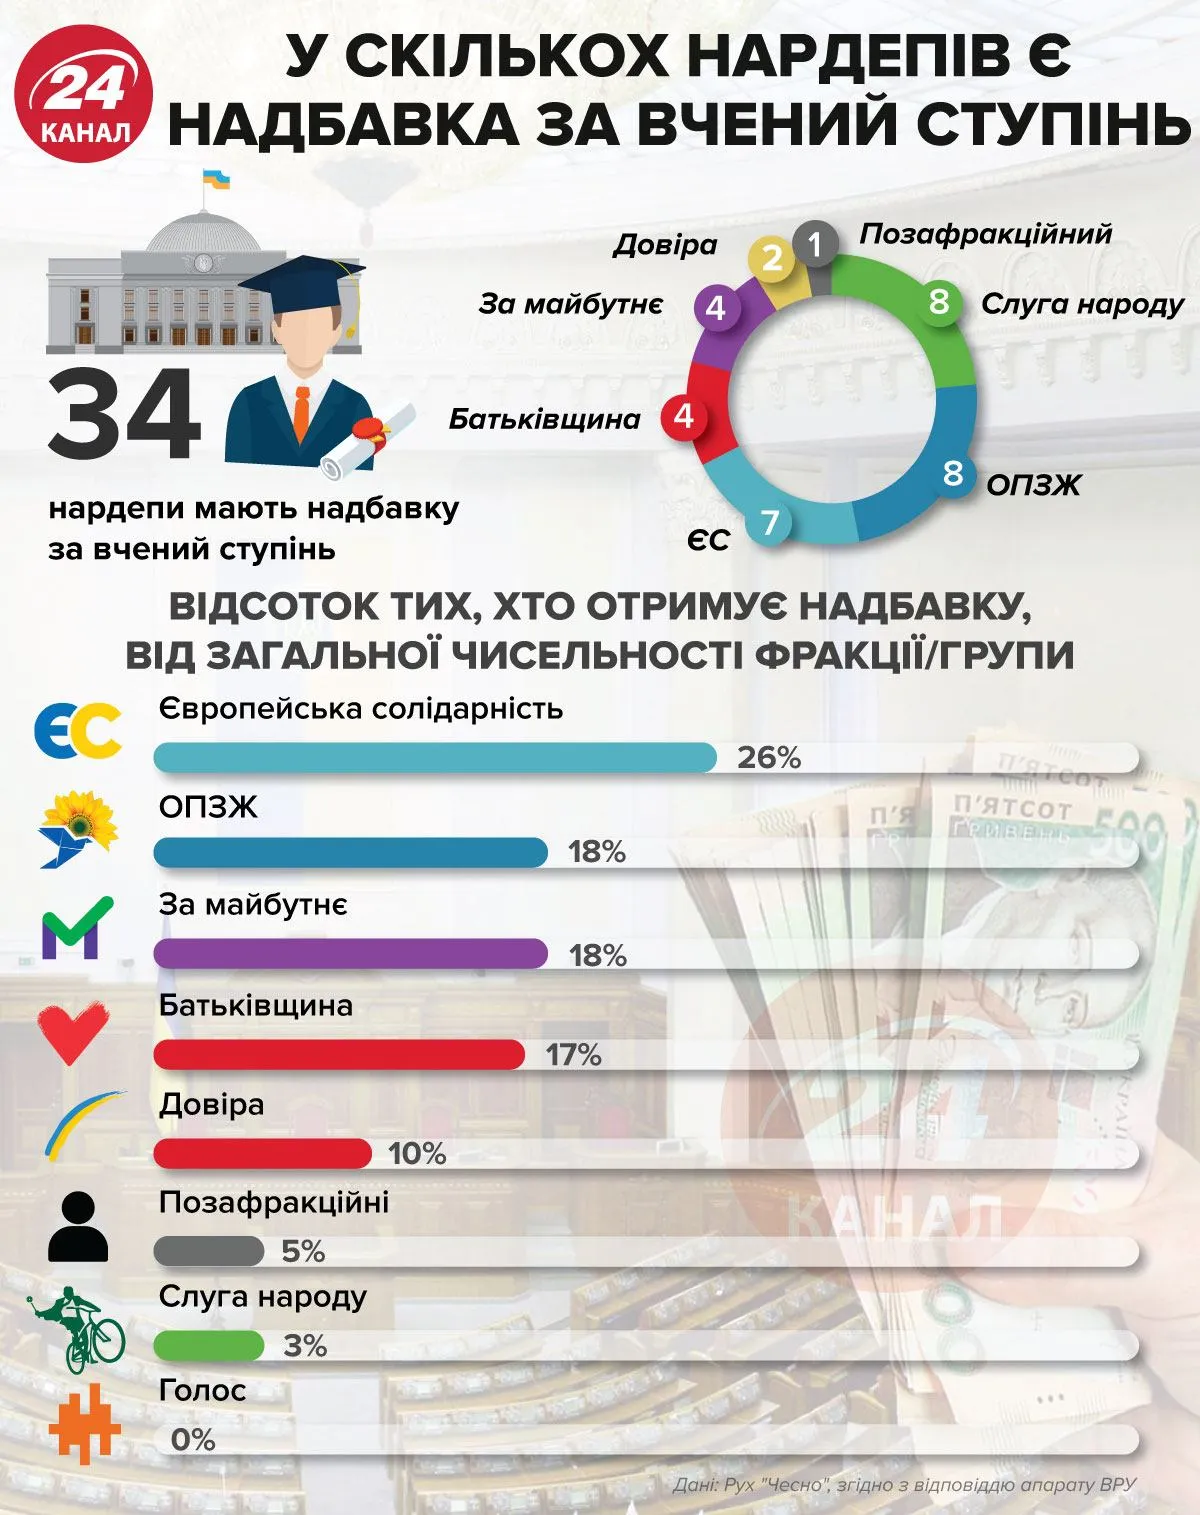 Надбавки депутатов за ученые звания / Инфографика 24 каналу